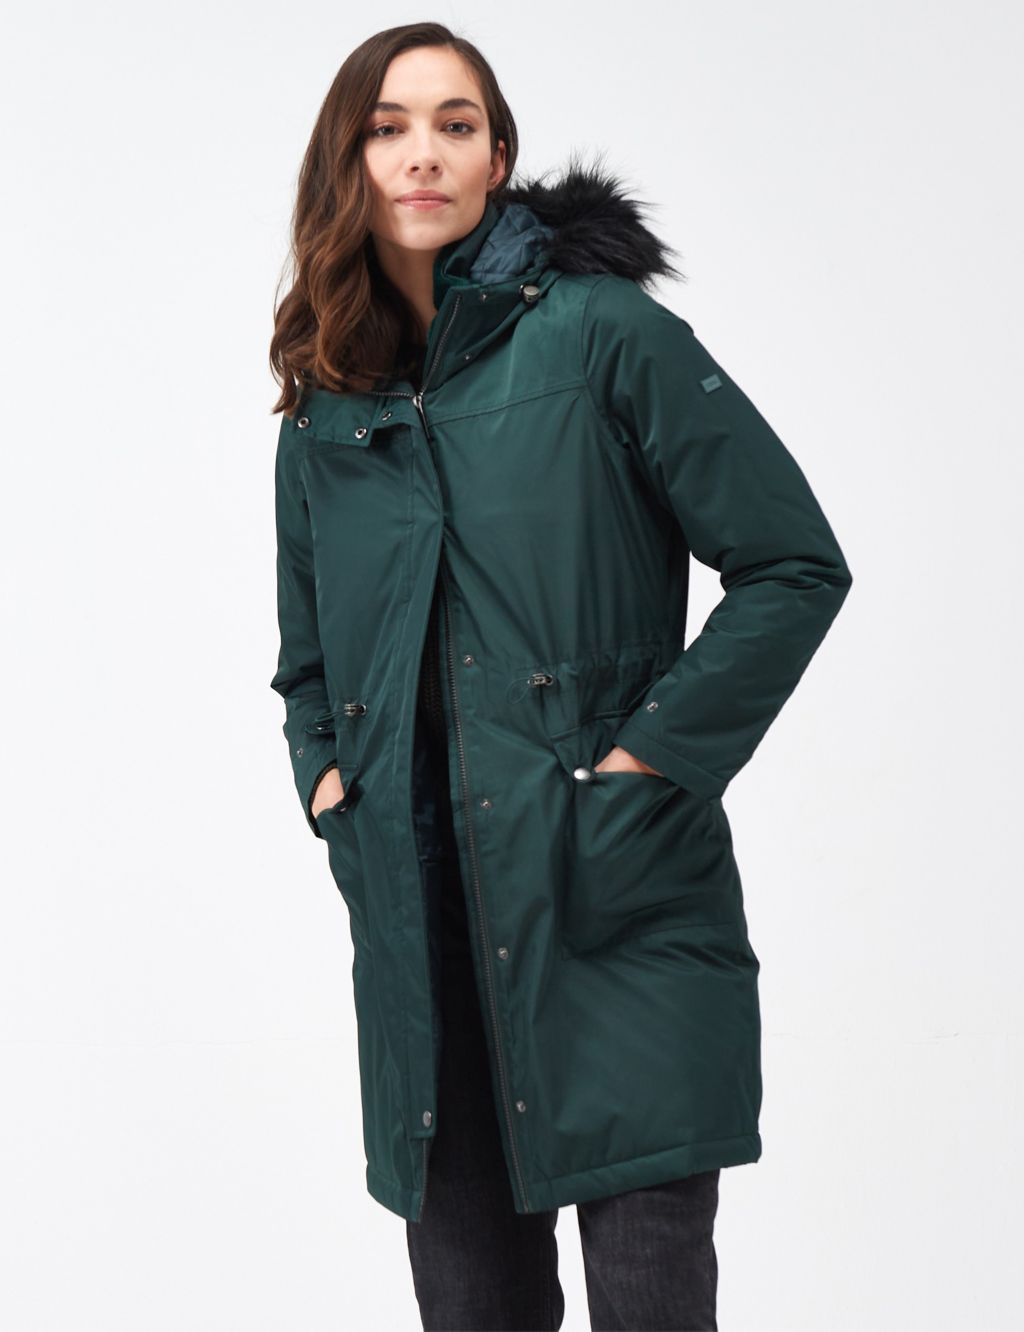 Lellani Waterproof | Regatta M&S Hooded Coat | Parka